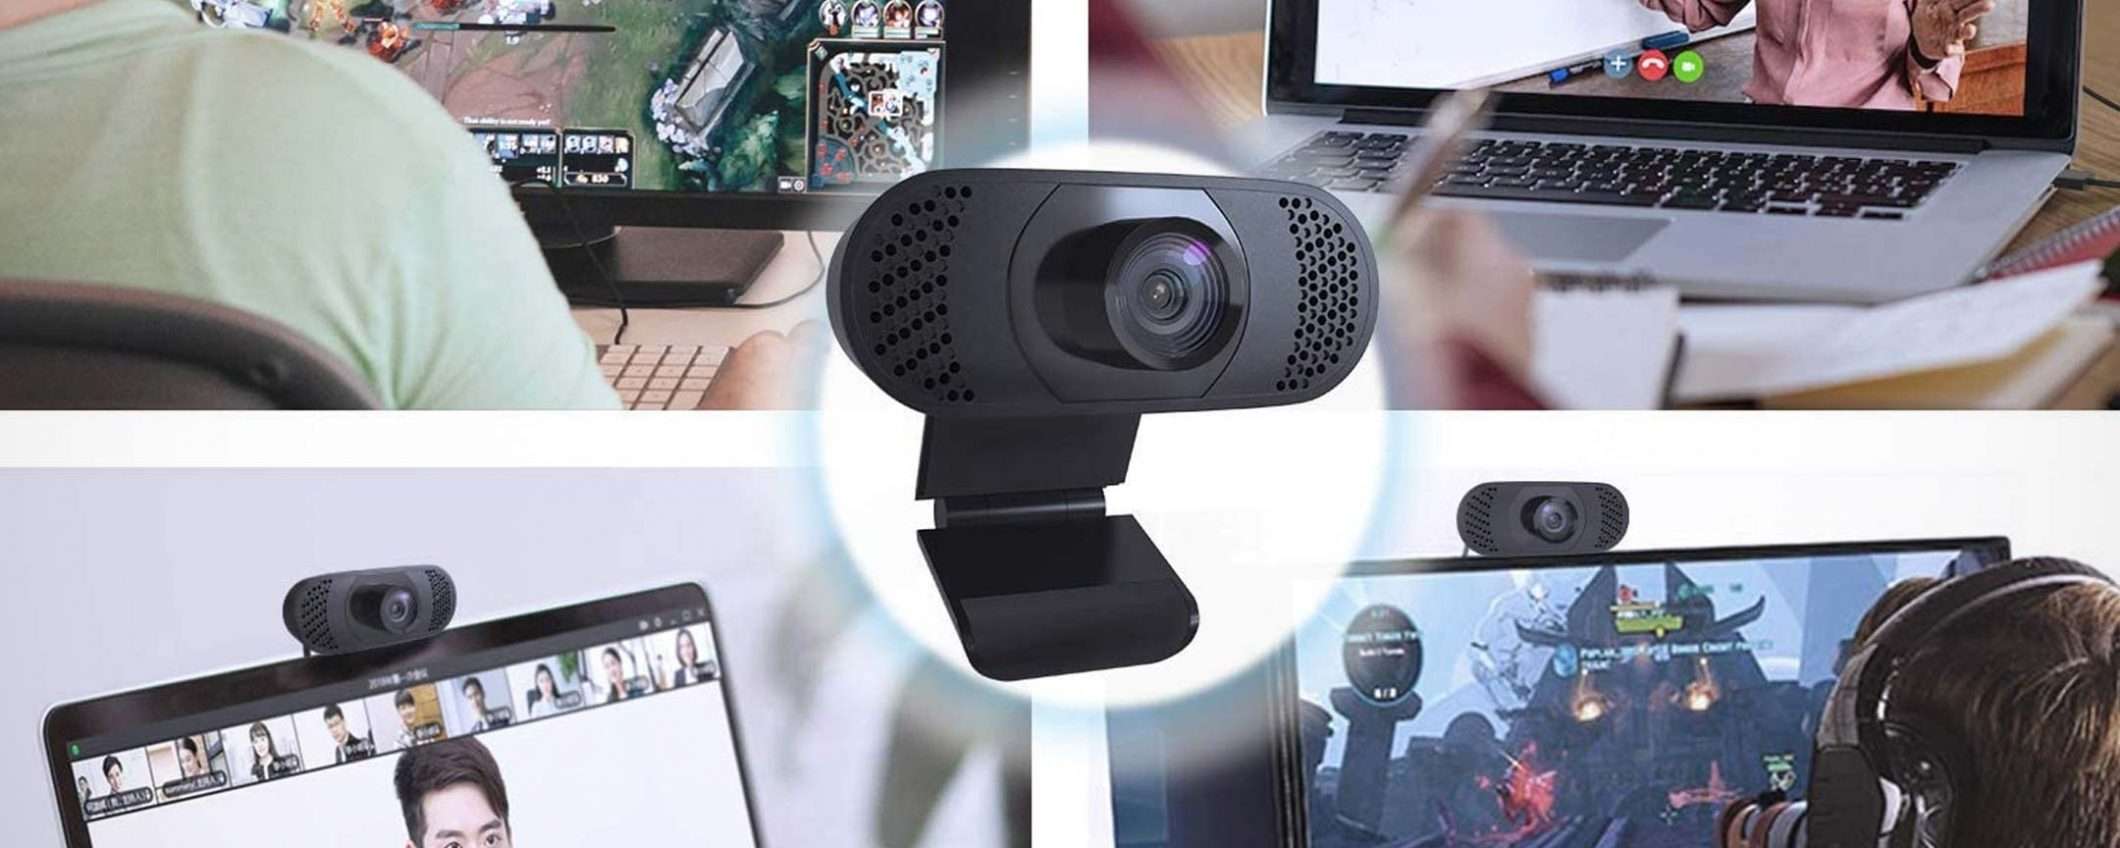 Una webcam Full HD per il PC a soli 21 euro